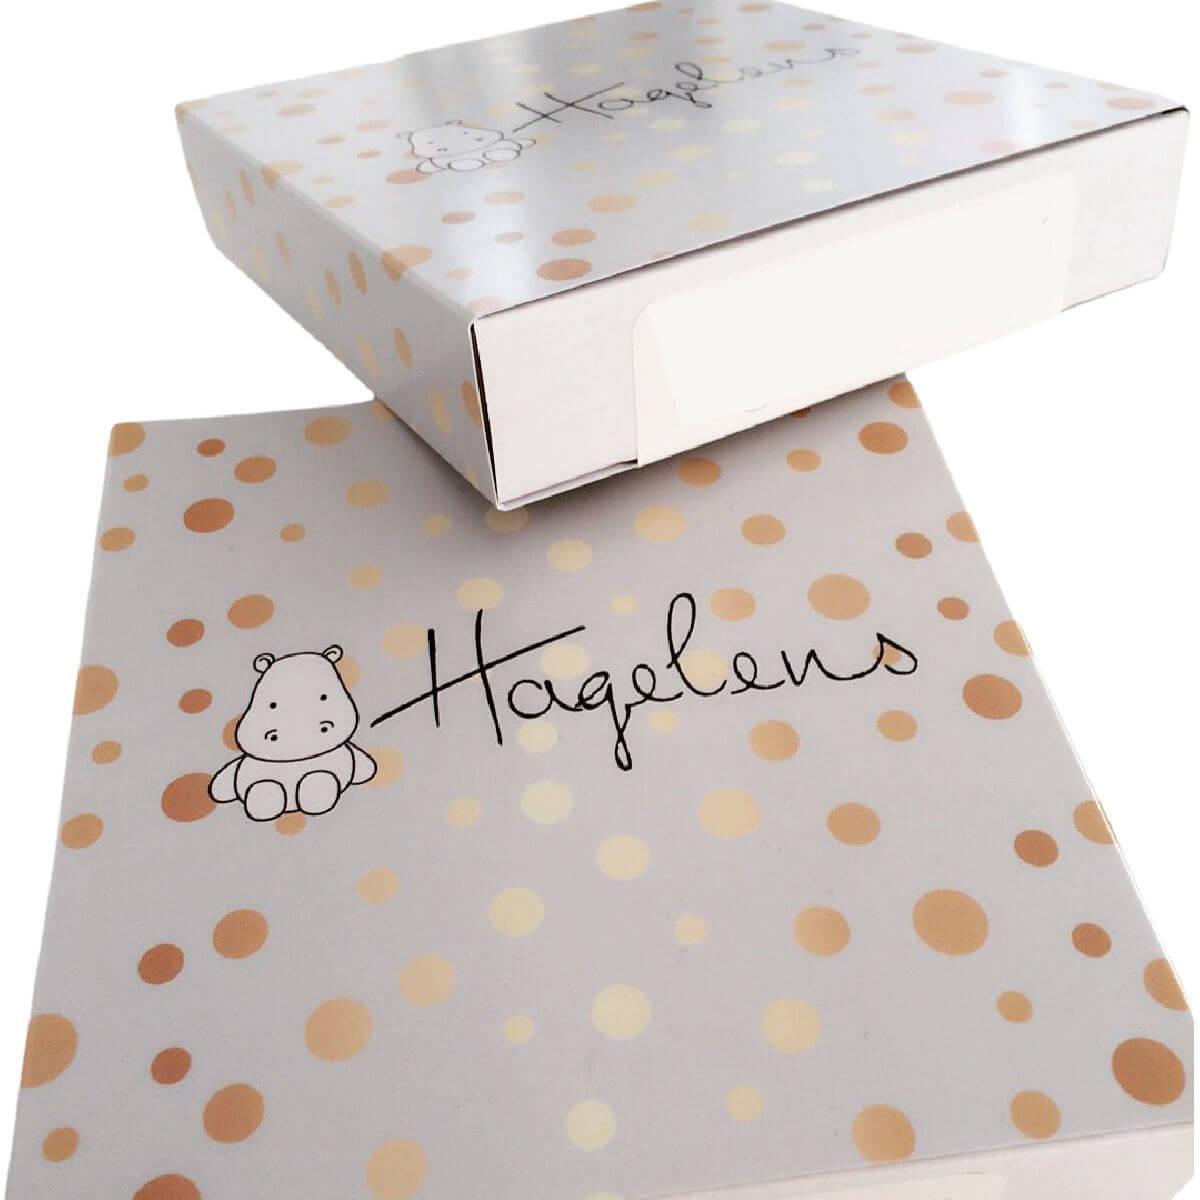 hagelens-brand-packaging